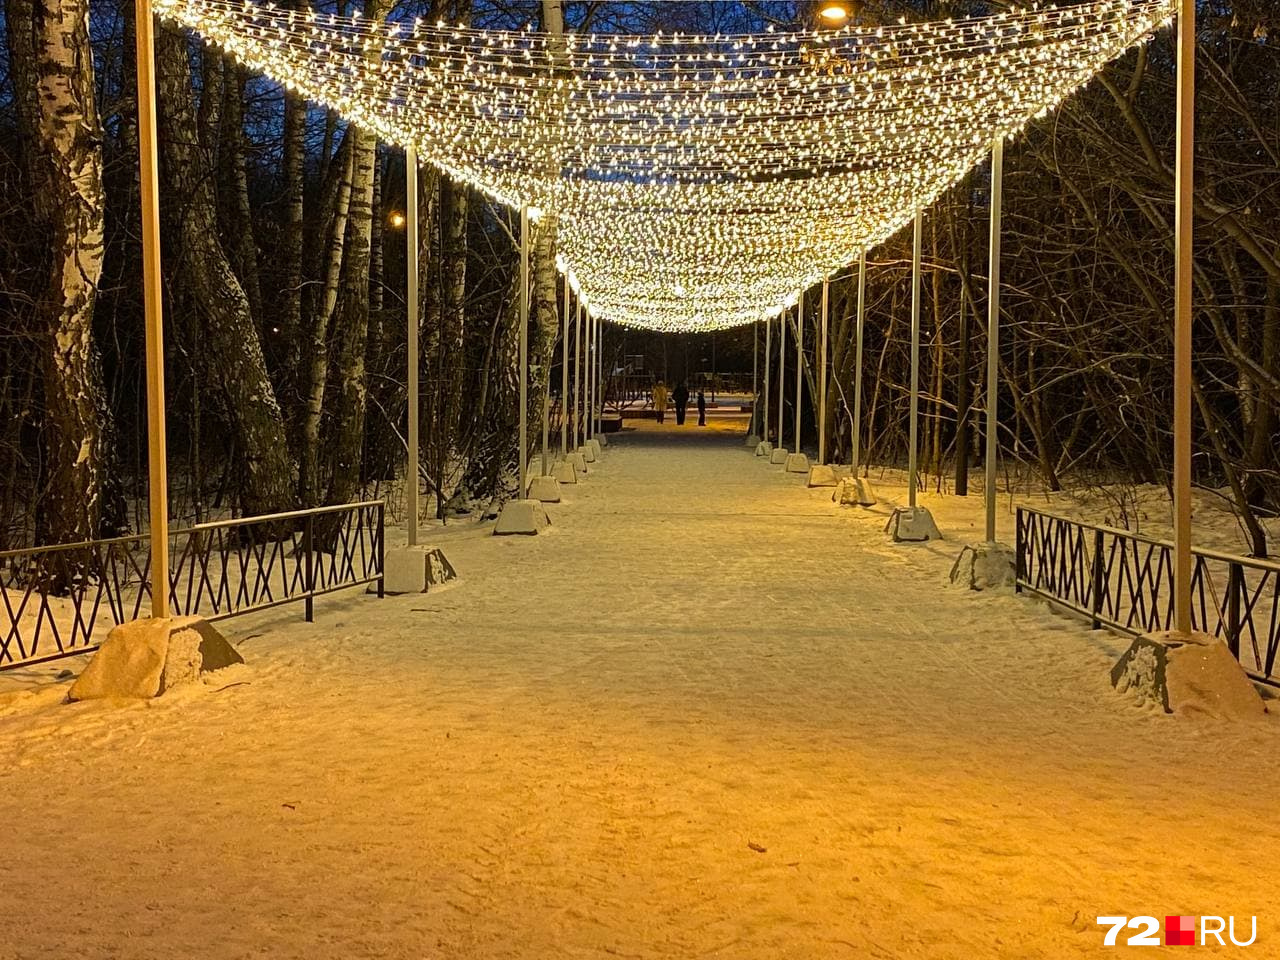 Недалеко от катка есть так называемое «звездное небо» декабря. 40 метров светового полога озаряют путь от улицы Барнаульской до центральной детской площадки и горок. Тут здорово делать памятные снимки